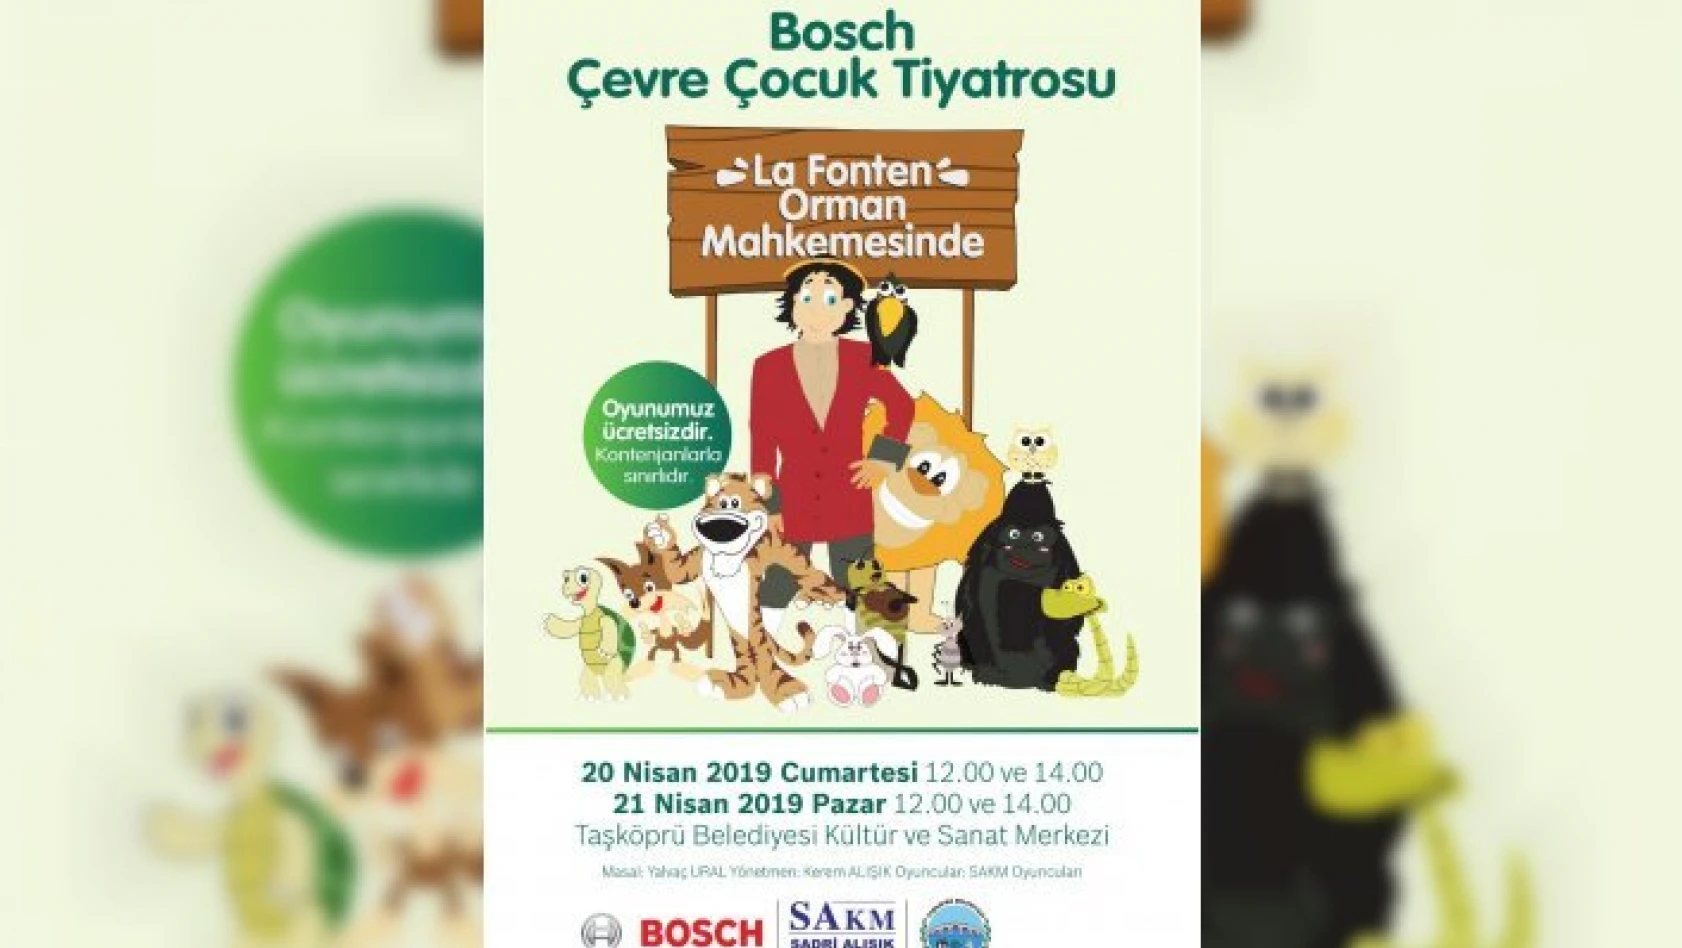 Bosch Çevre Çocuk Tiyatrosu, Kastamonu'da çocuklarla buluşacak